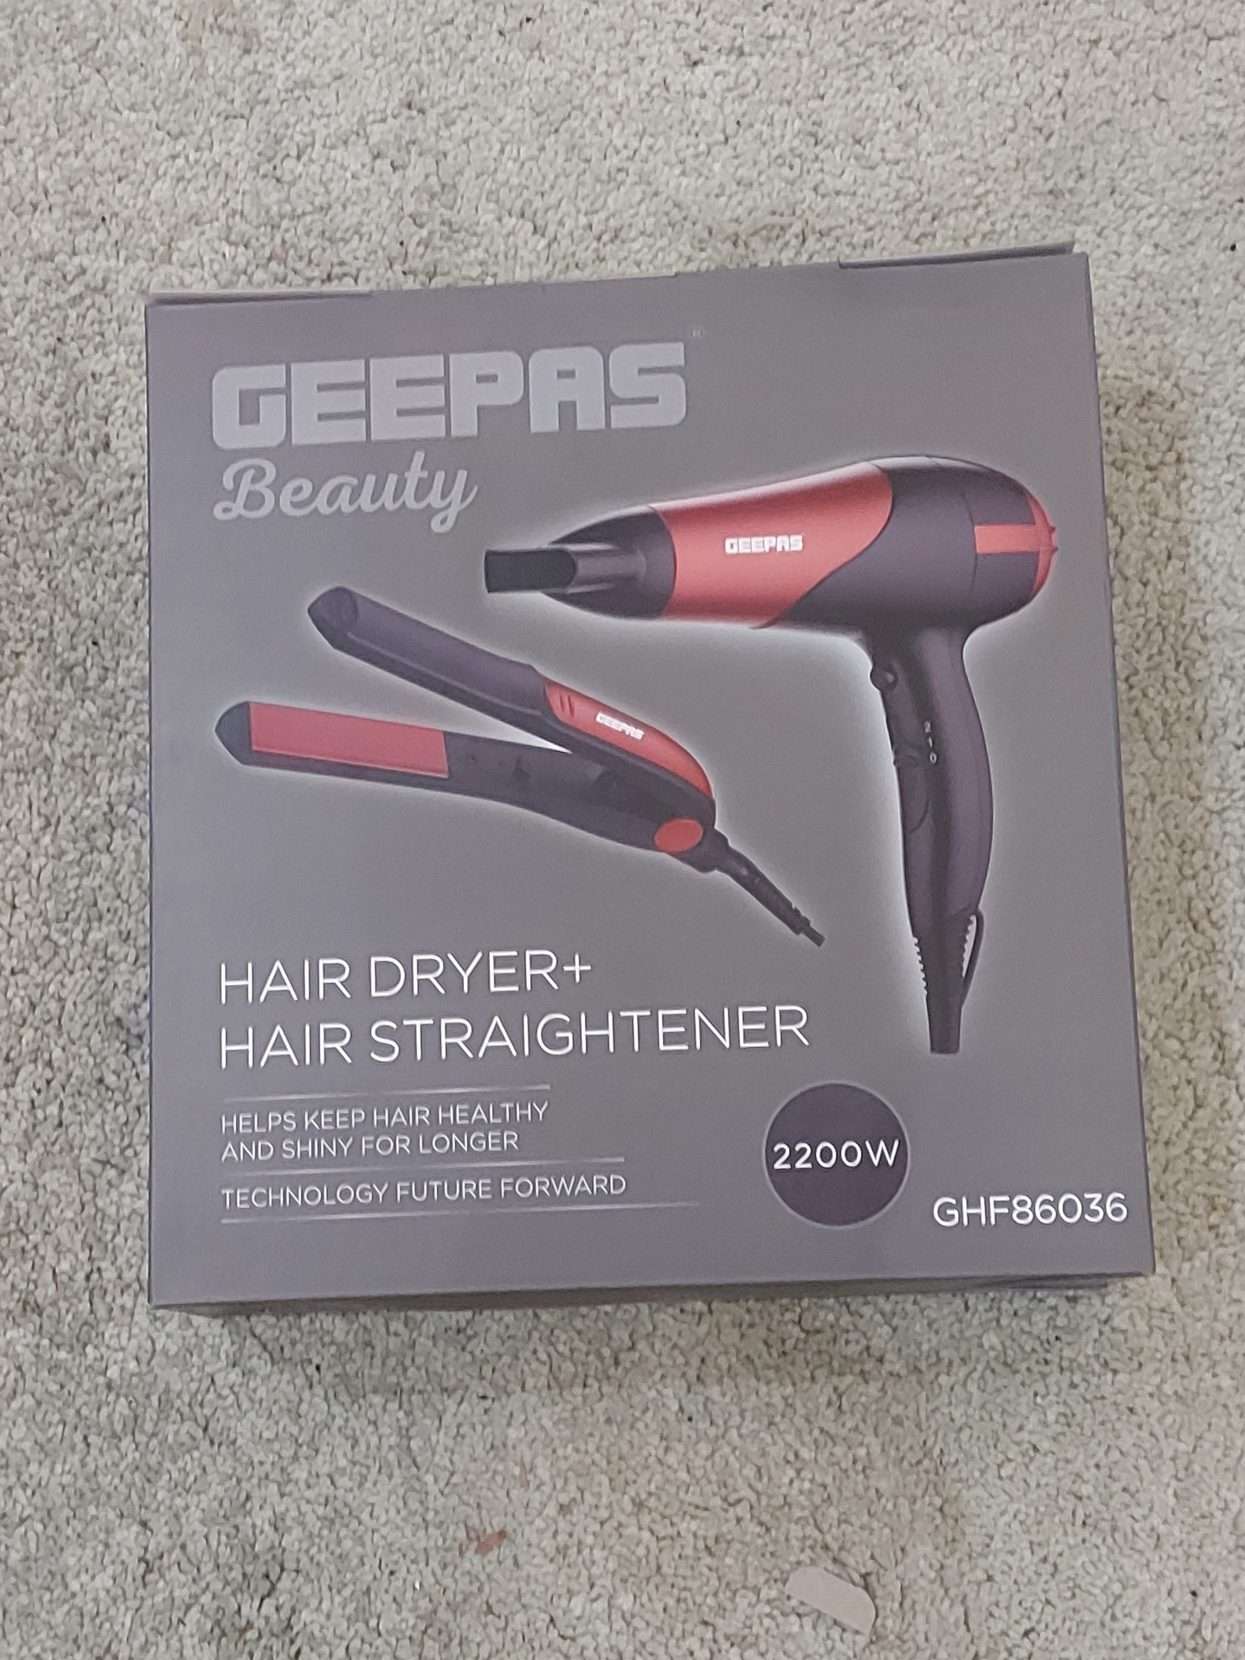 Geepas Hair Dryer and Straightener